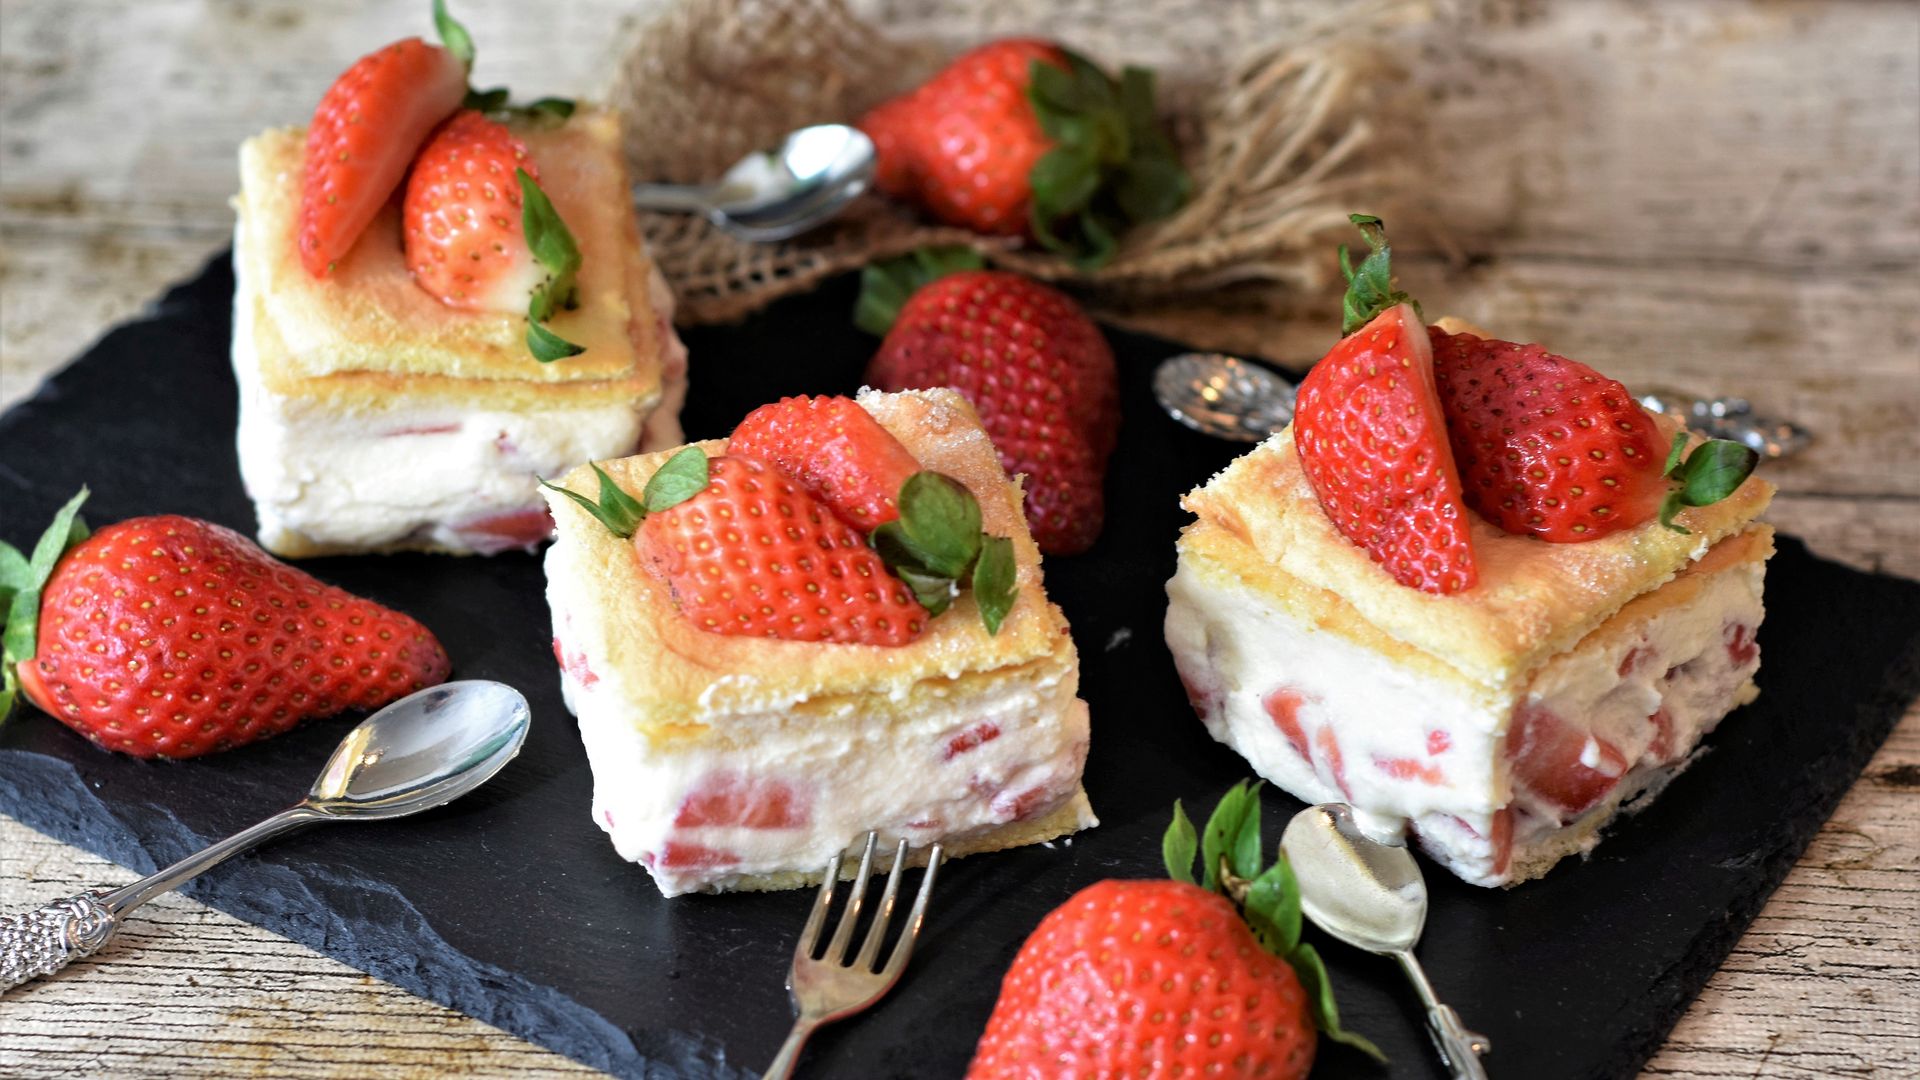 多种样式的美味草莓蛋糕高清壁纸